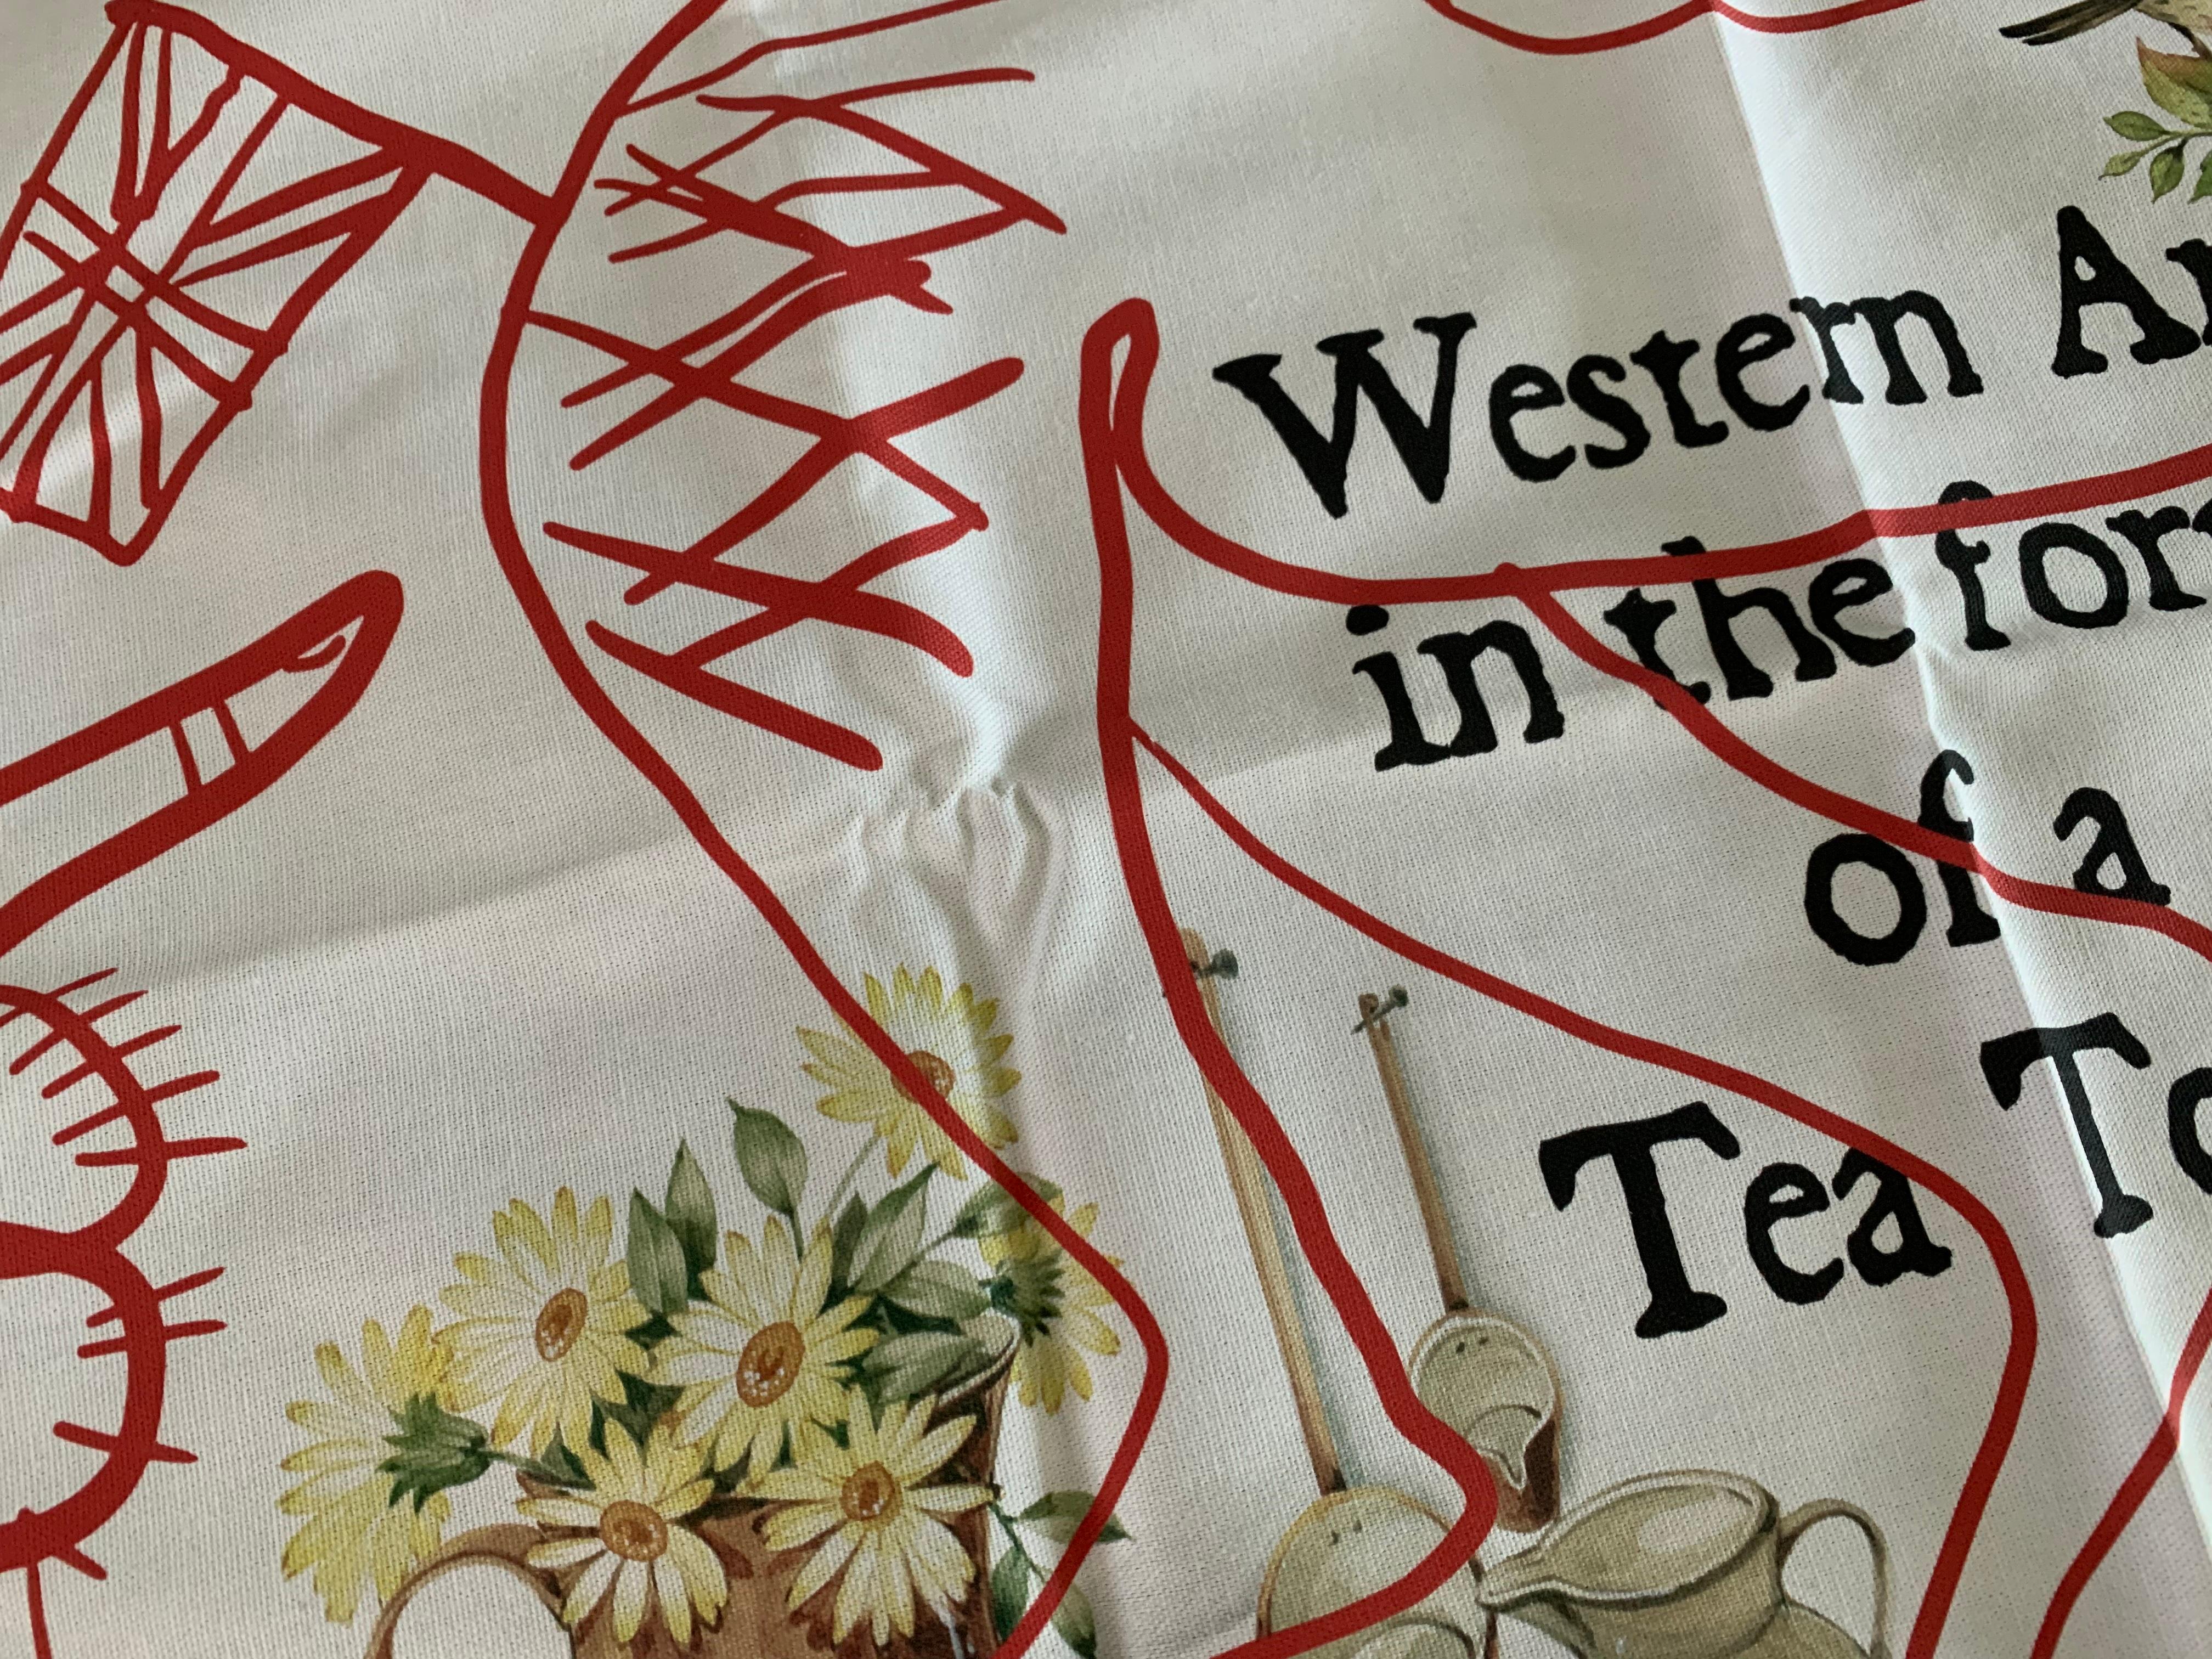 Western Art en forme de serviette à thé - Grayson perry - Print de Grayson Perry